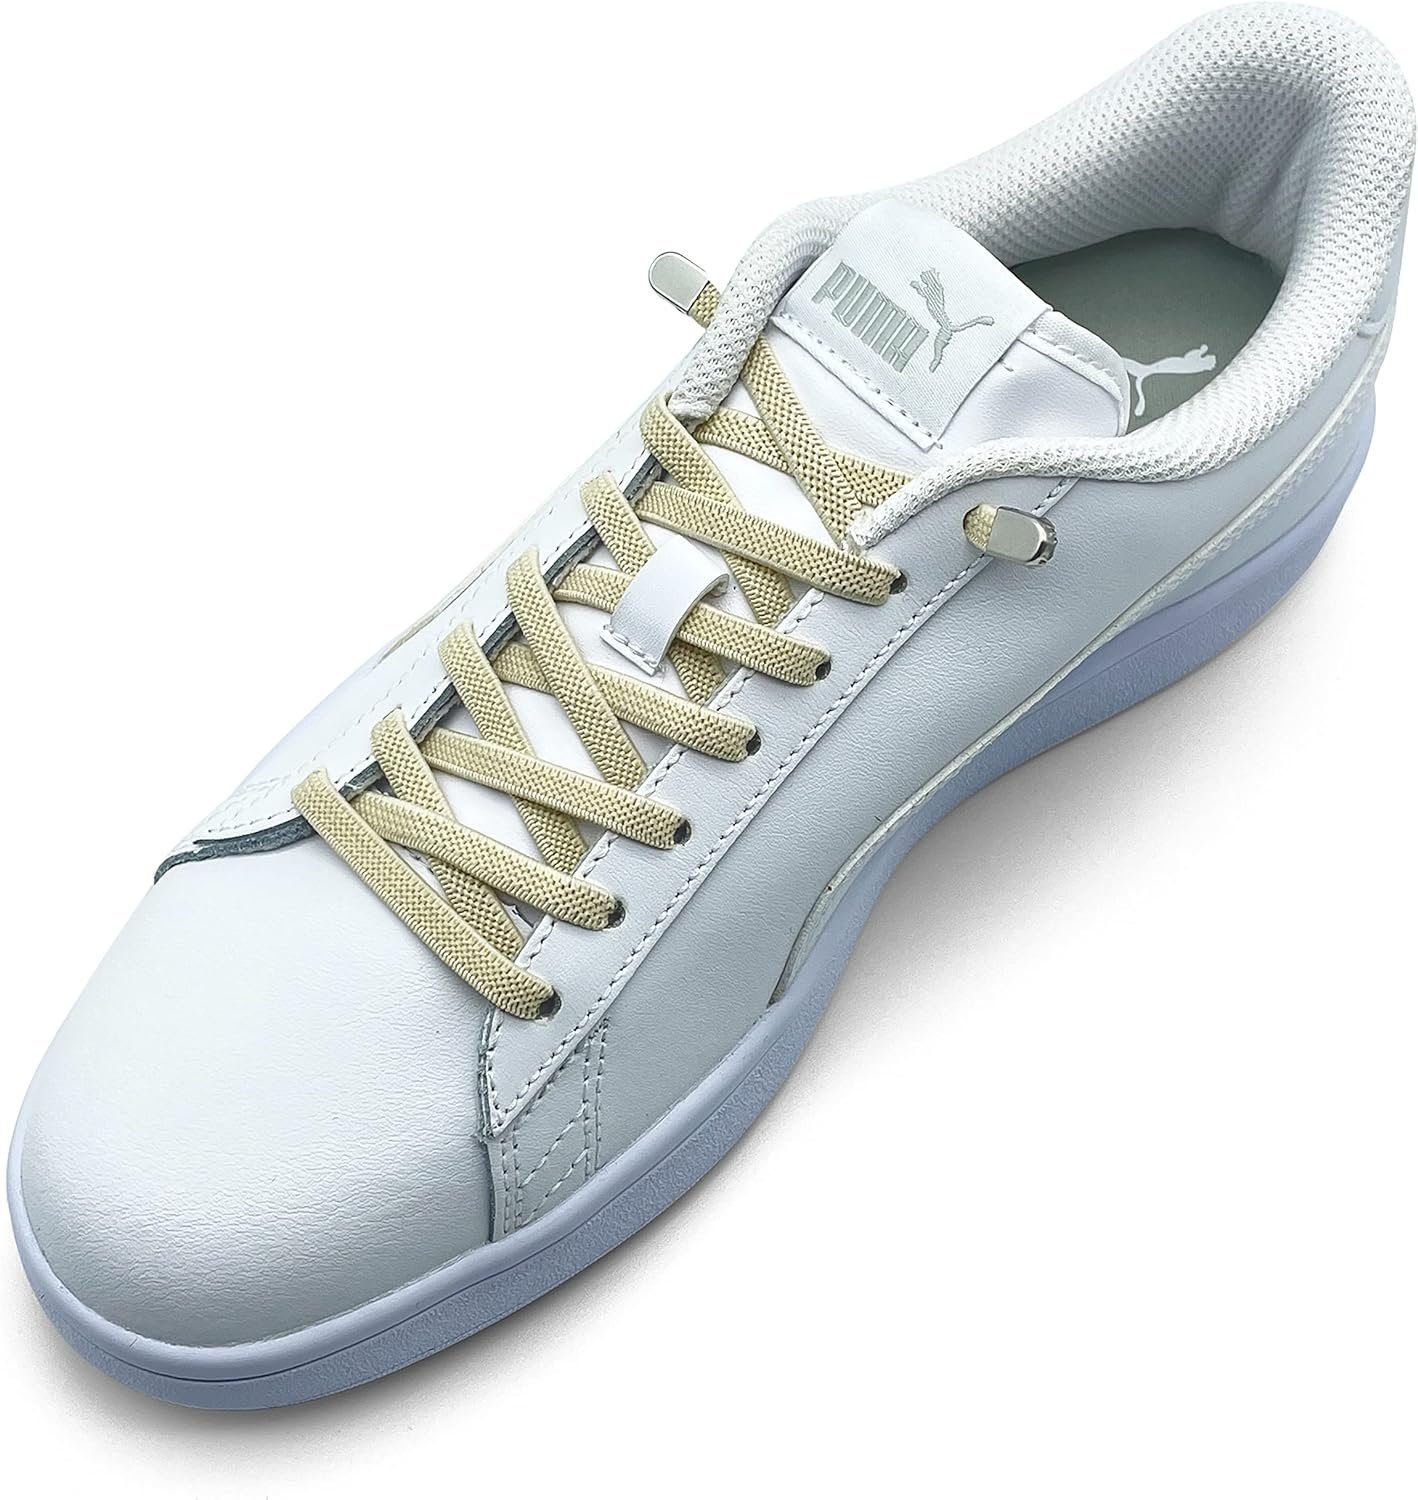 ELANOX Schnürsenkel 4 Stück für 2 Paar Schuhe elastische Schnürsenkel mit Clips, inkl. Enden (Clips) - 8 St. in silber beige